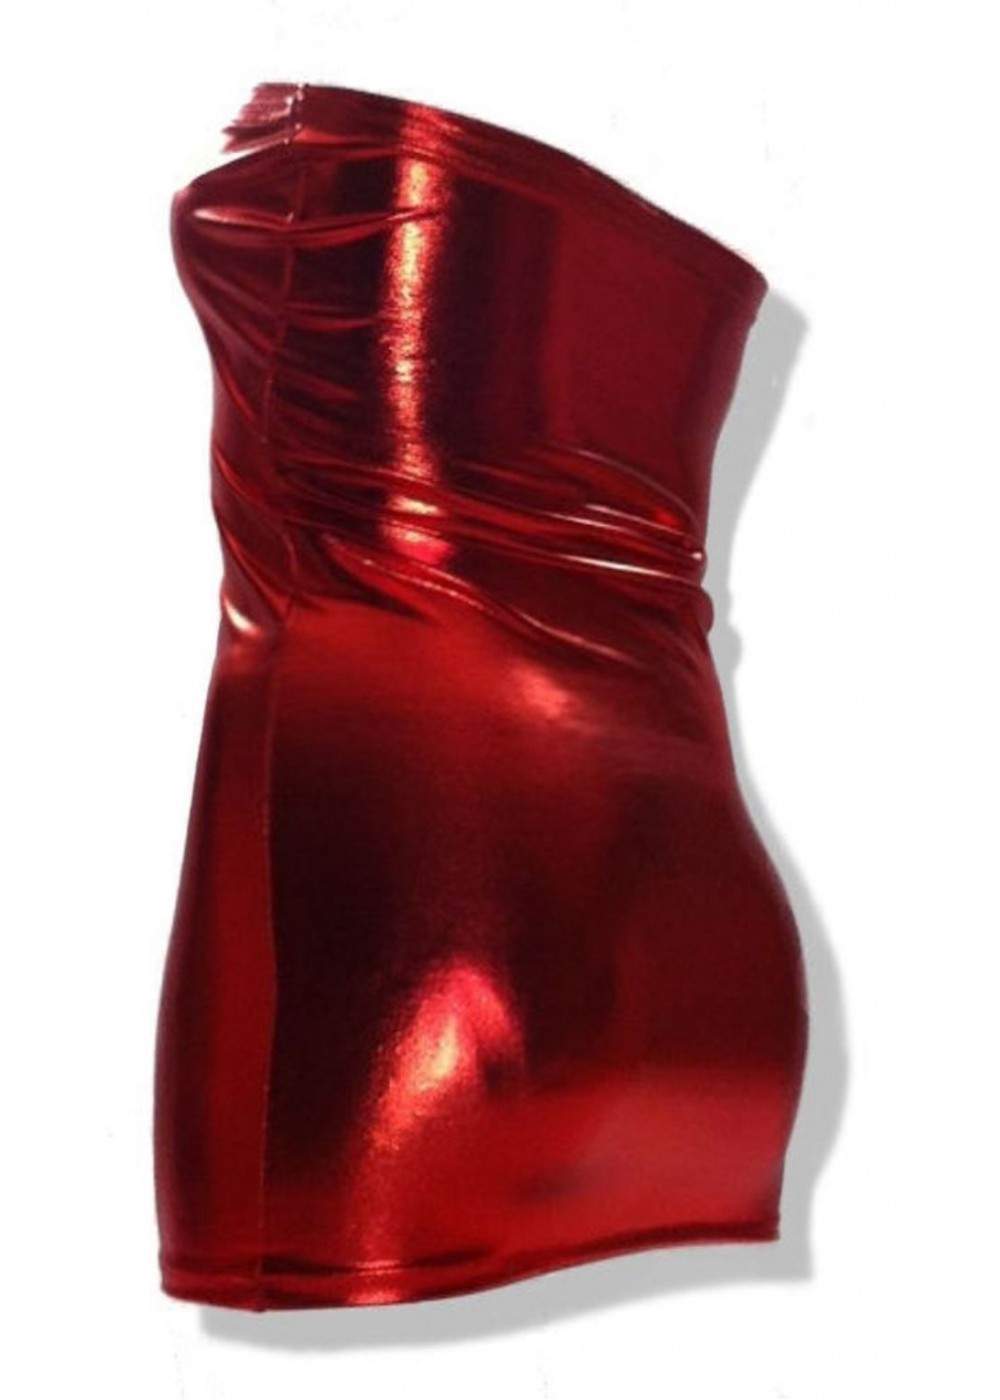 Leder Optik Hammer Big Size Bandeau Kleid Rot - 